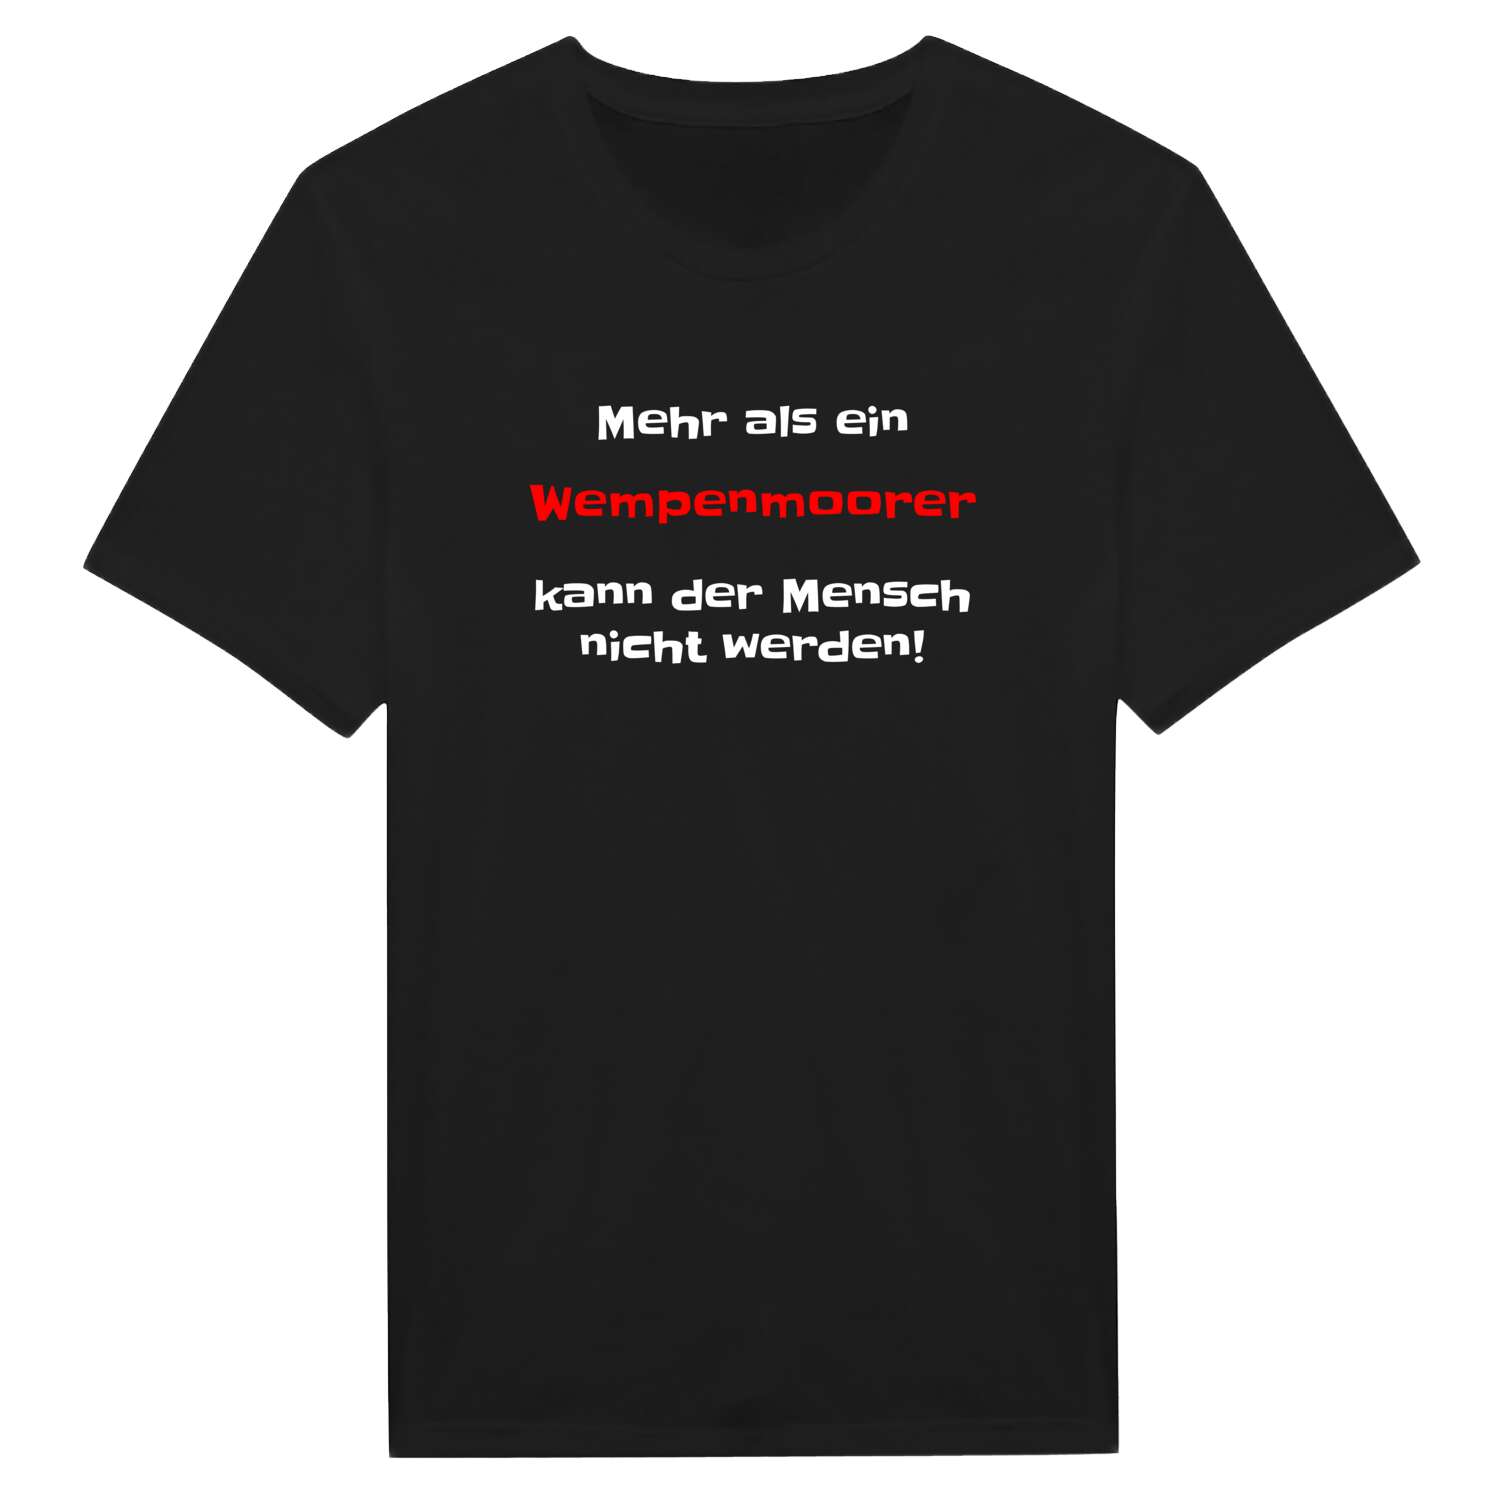 Wempenmoor T-Shirt »Mehr als ein«